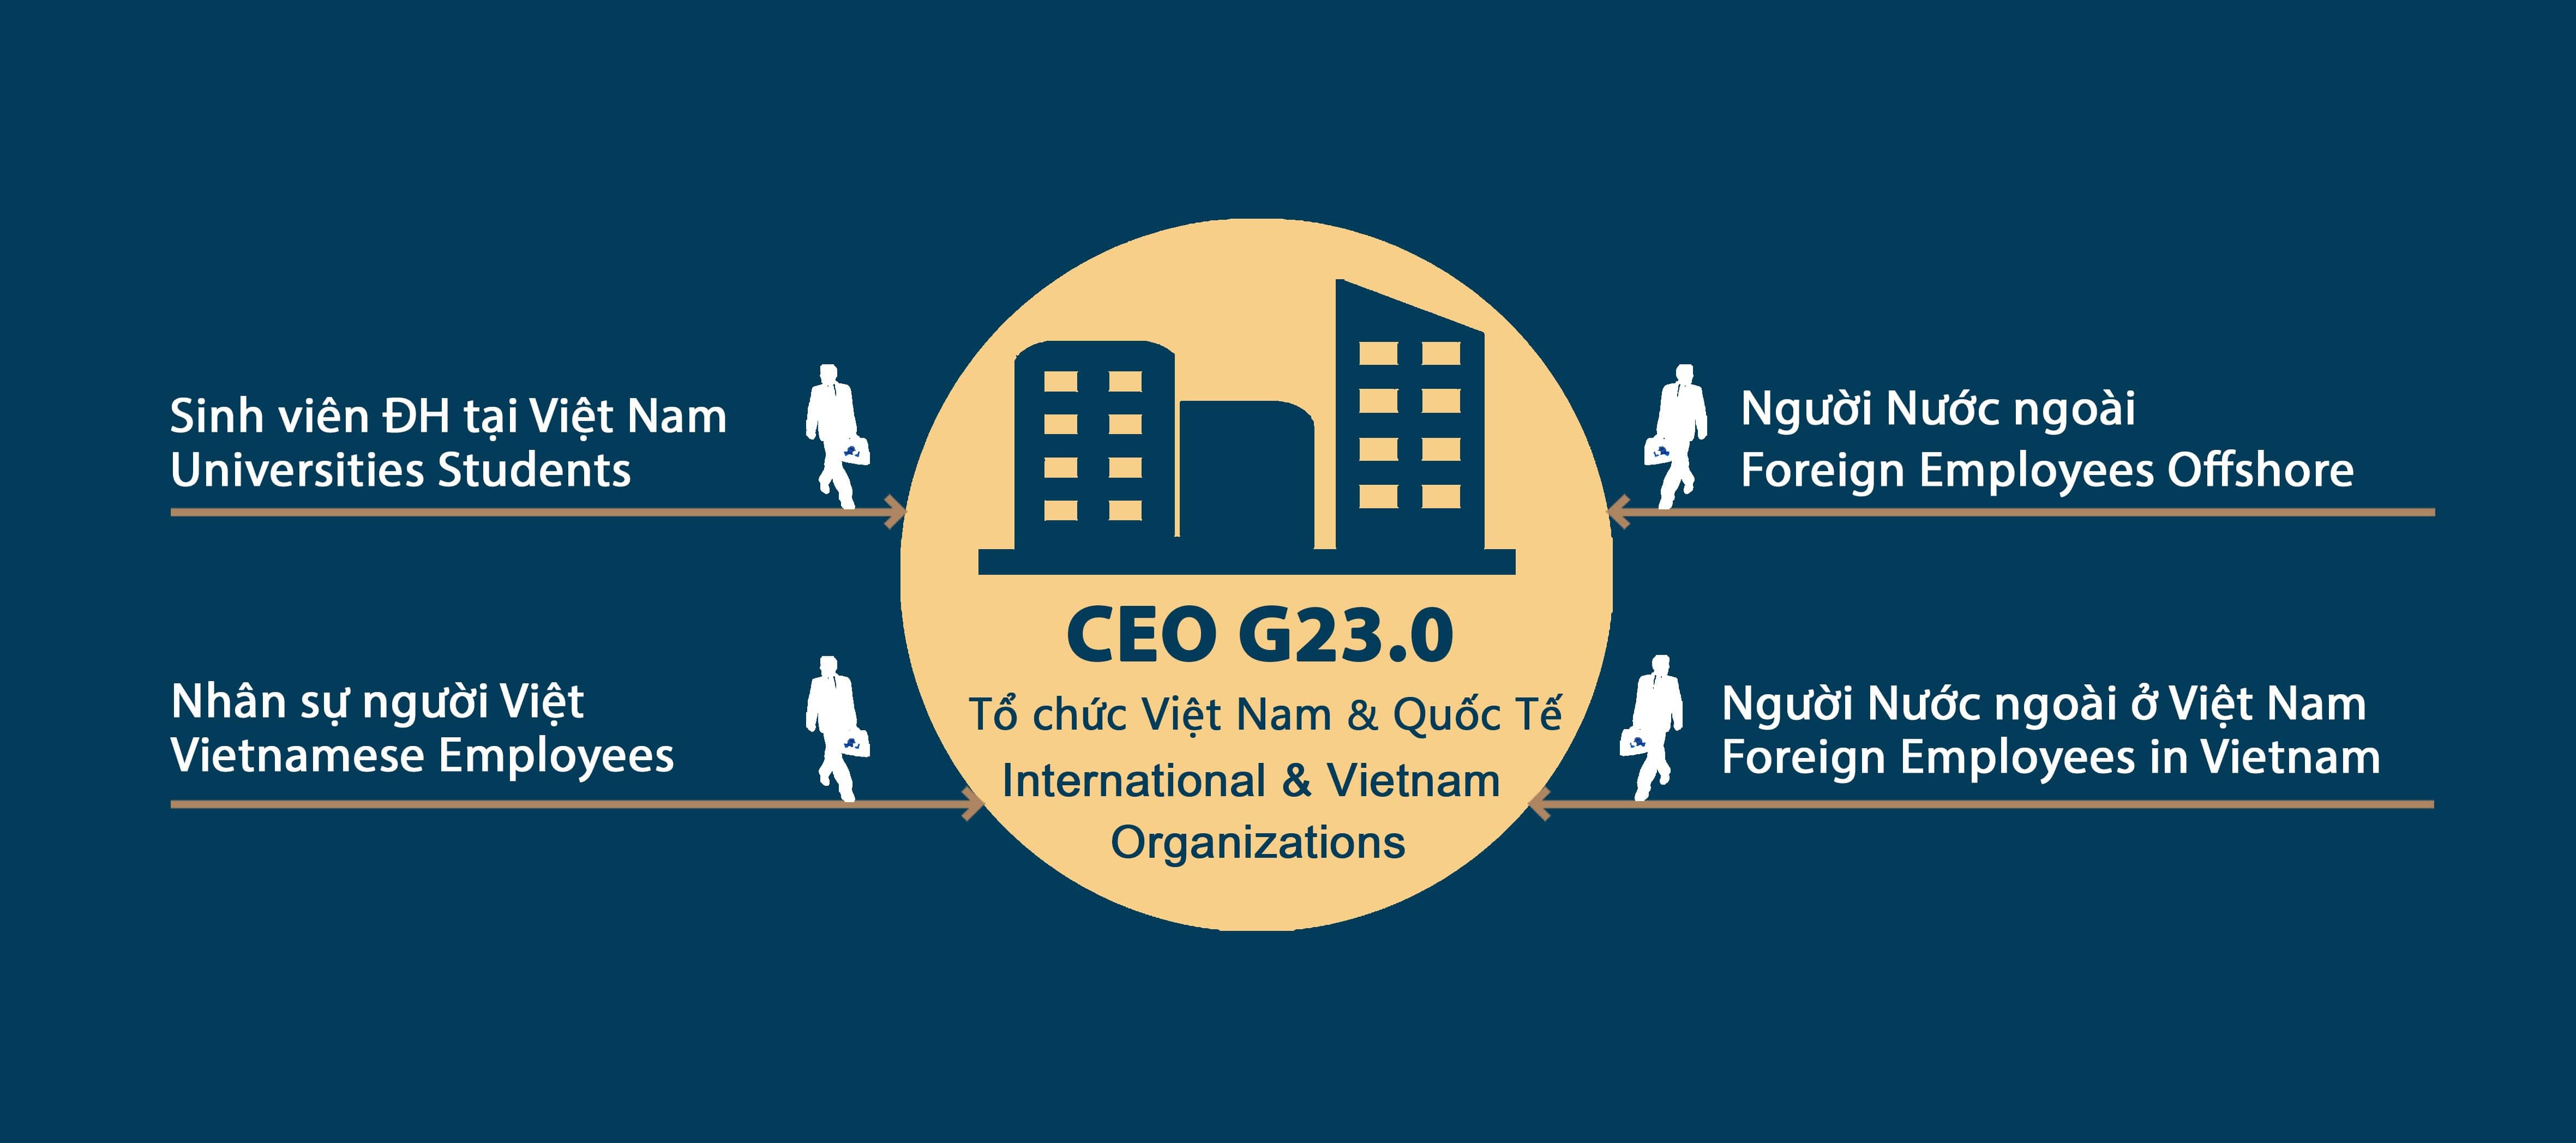 CEO HOI NHAP TOAN CAU G23.0